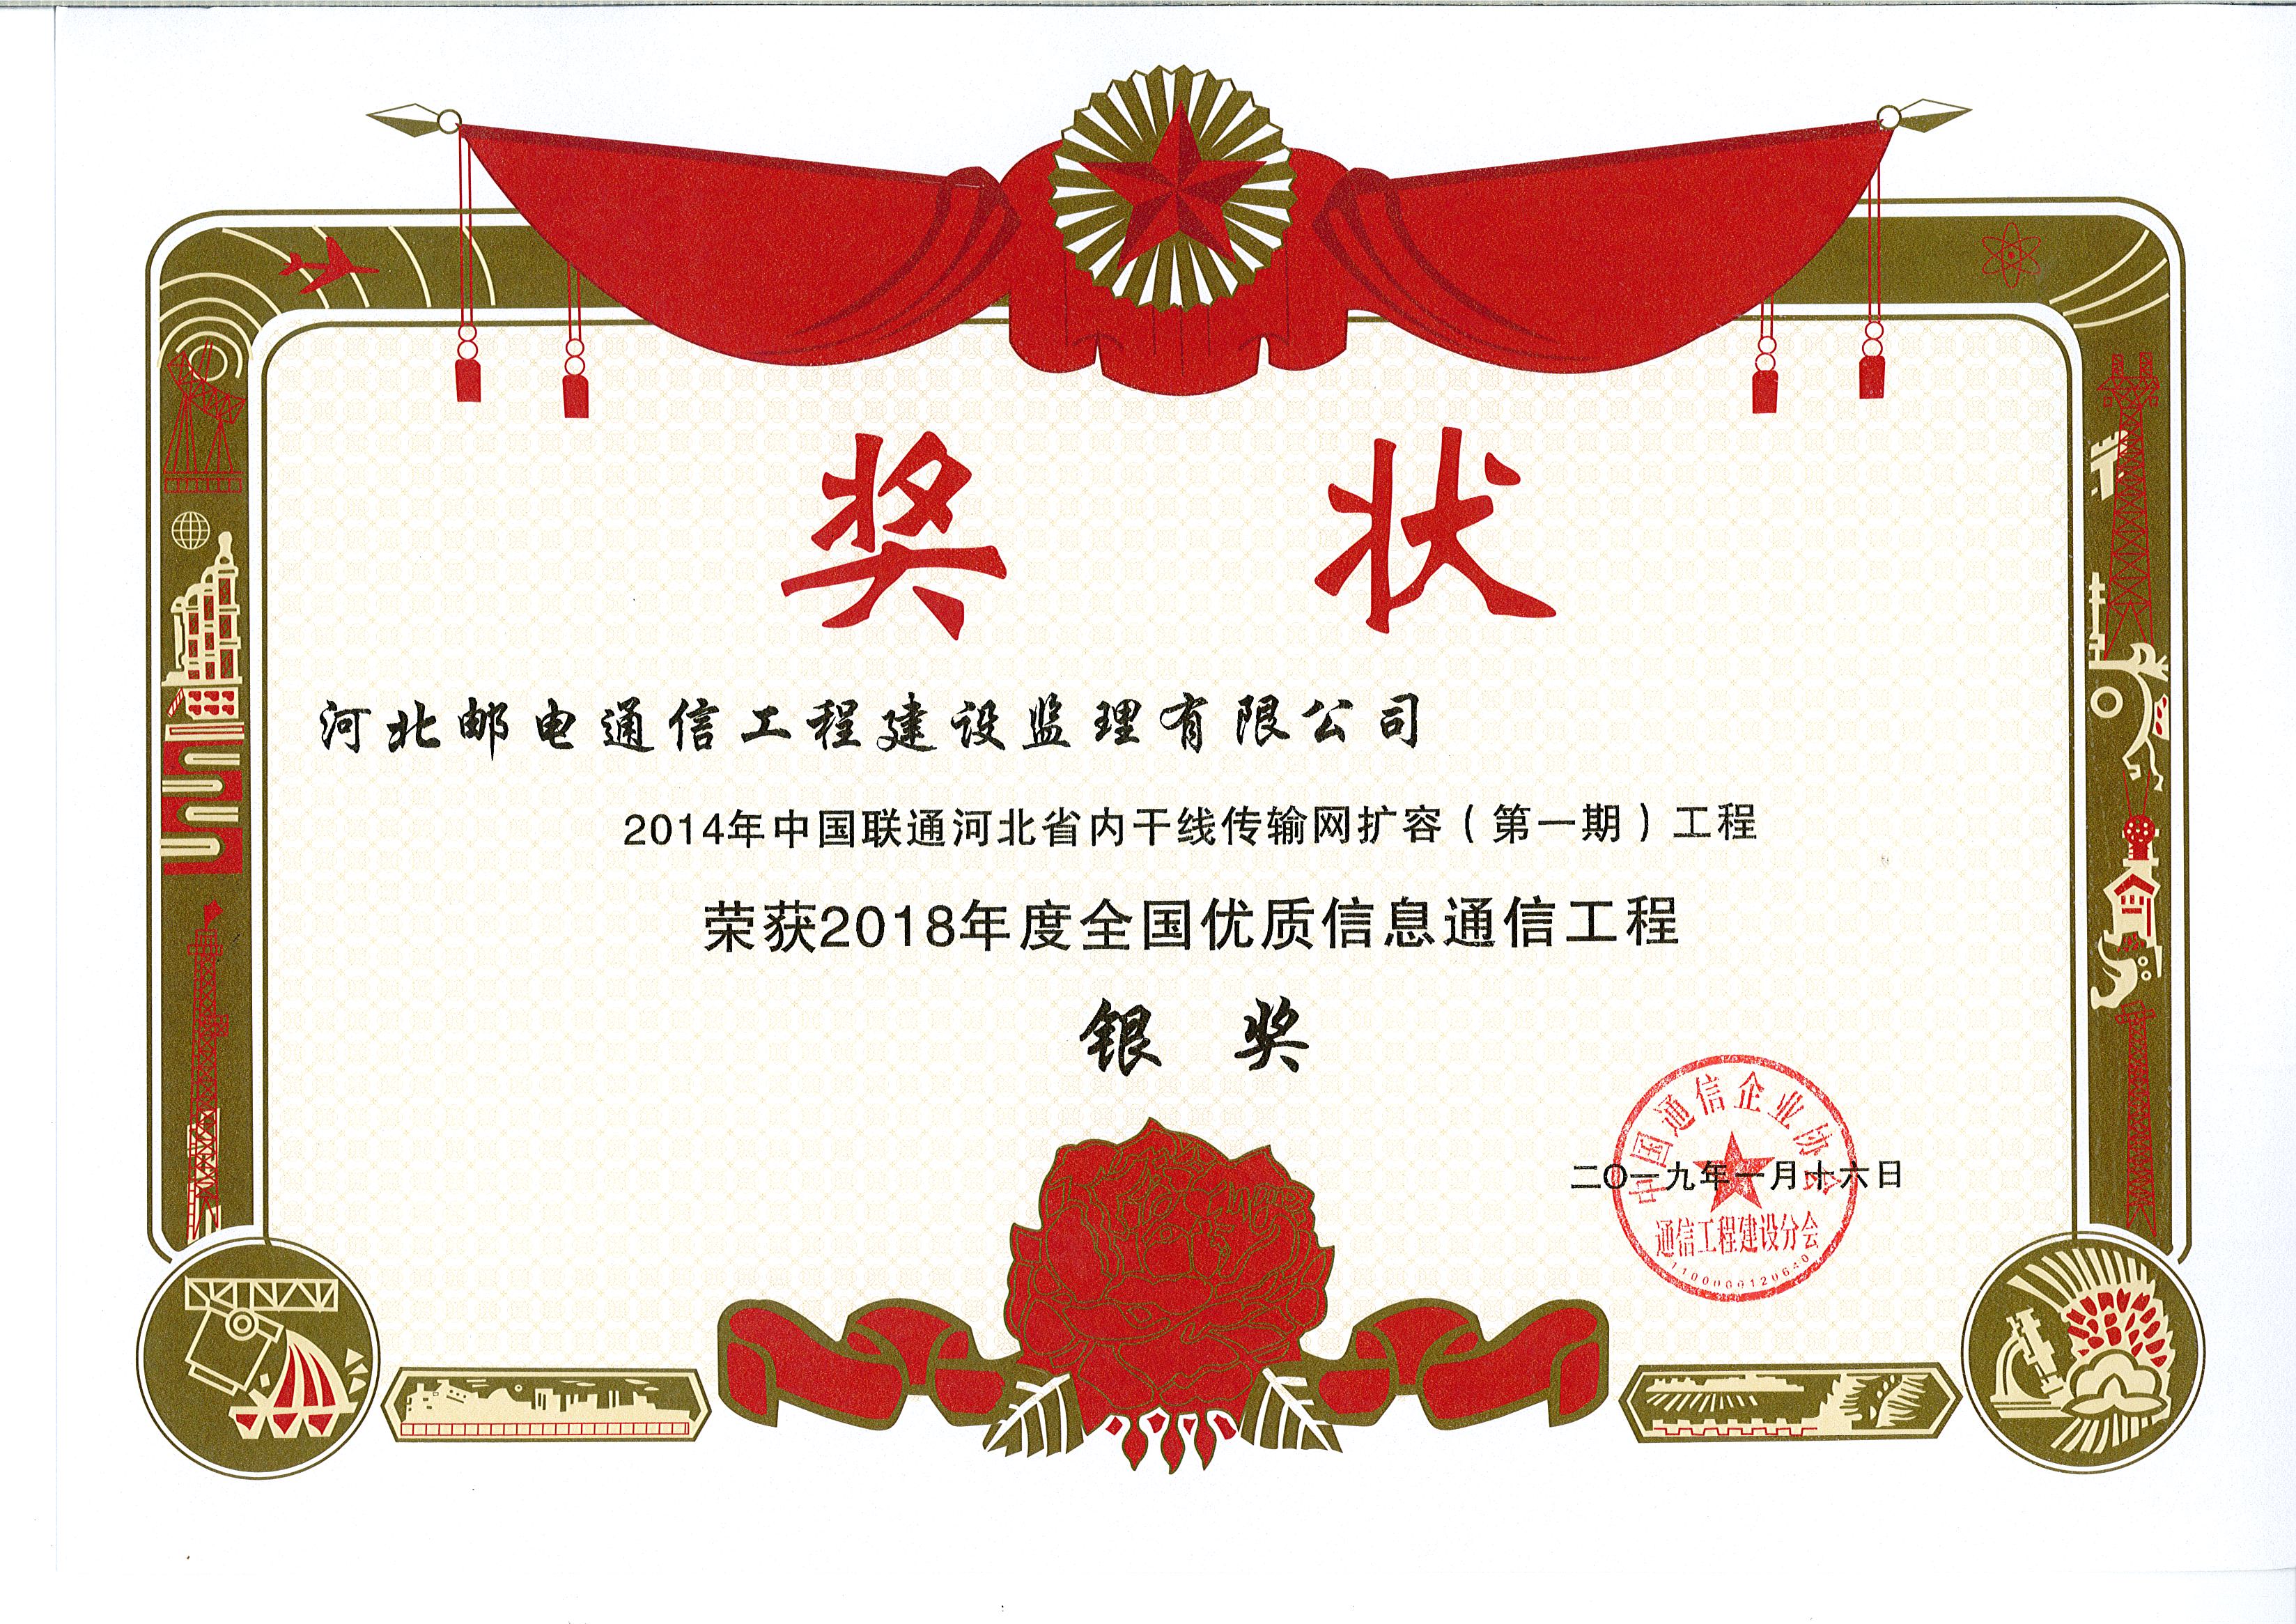 2014年中国联通河北省内干线传输网扩容（第一期）工程